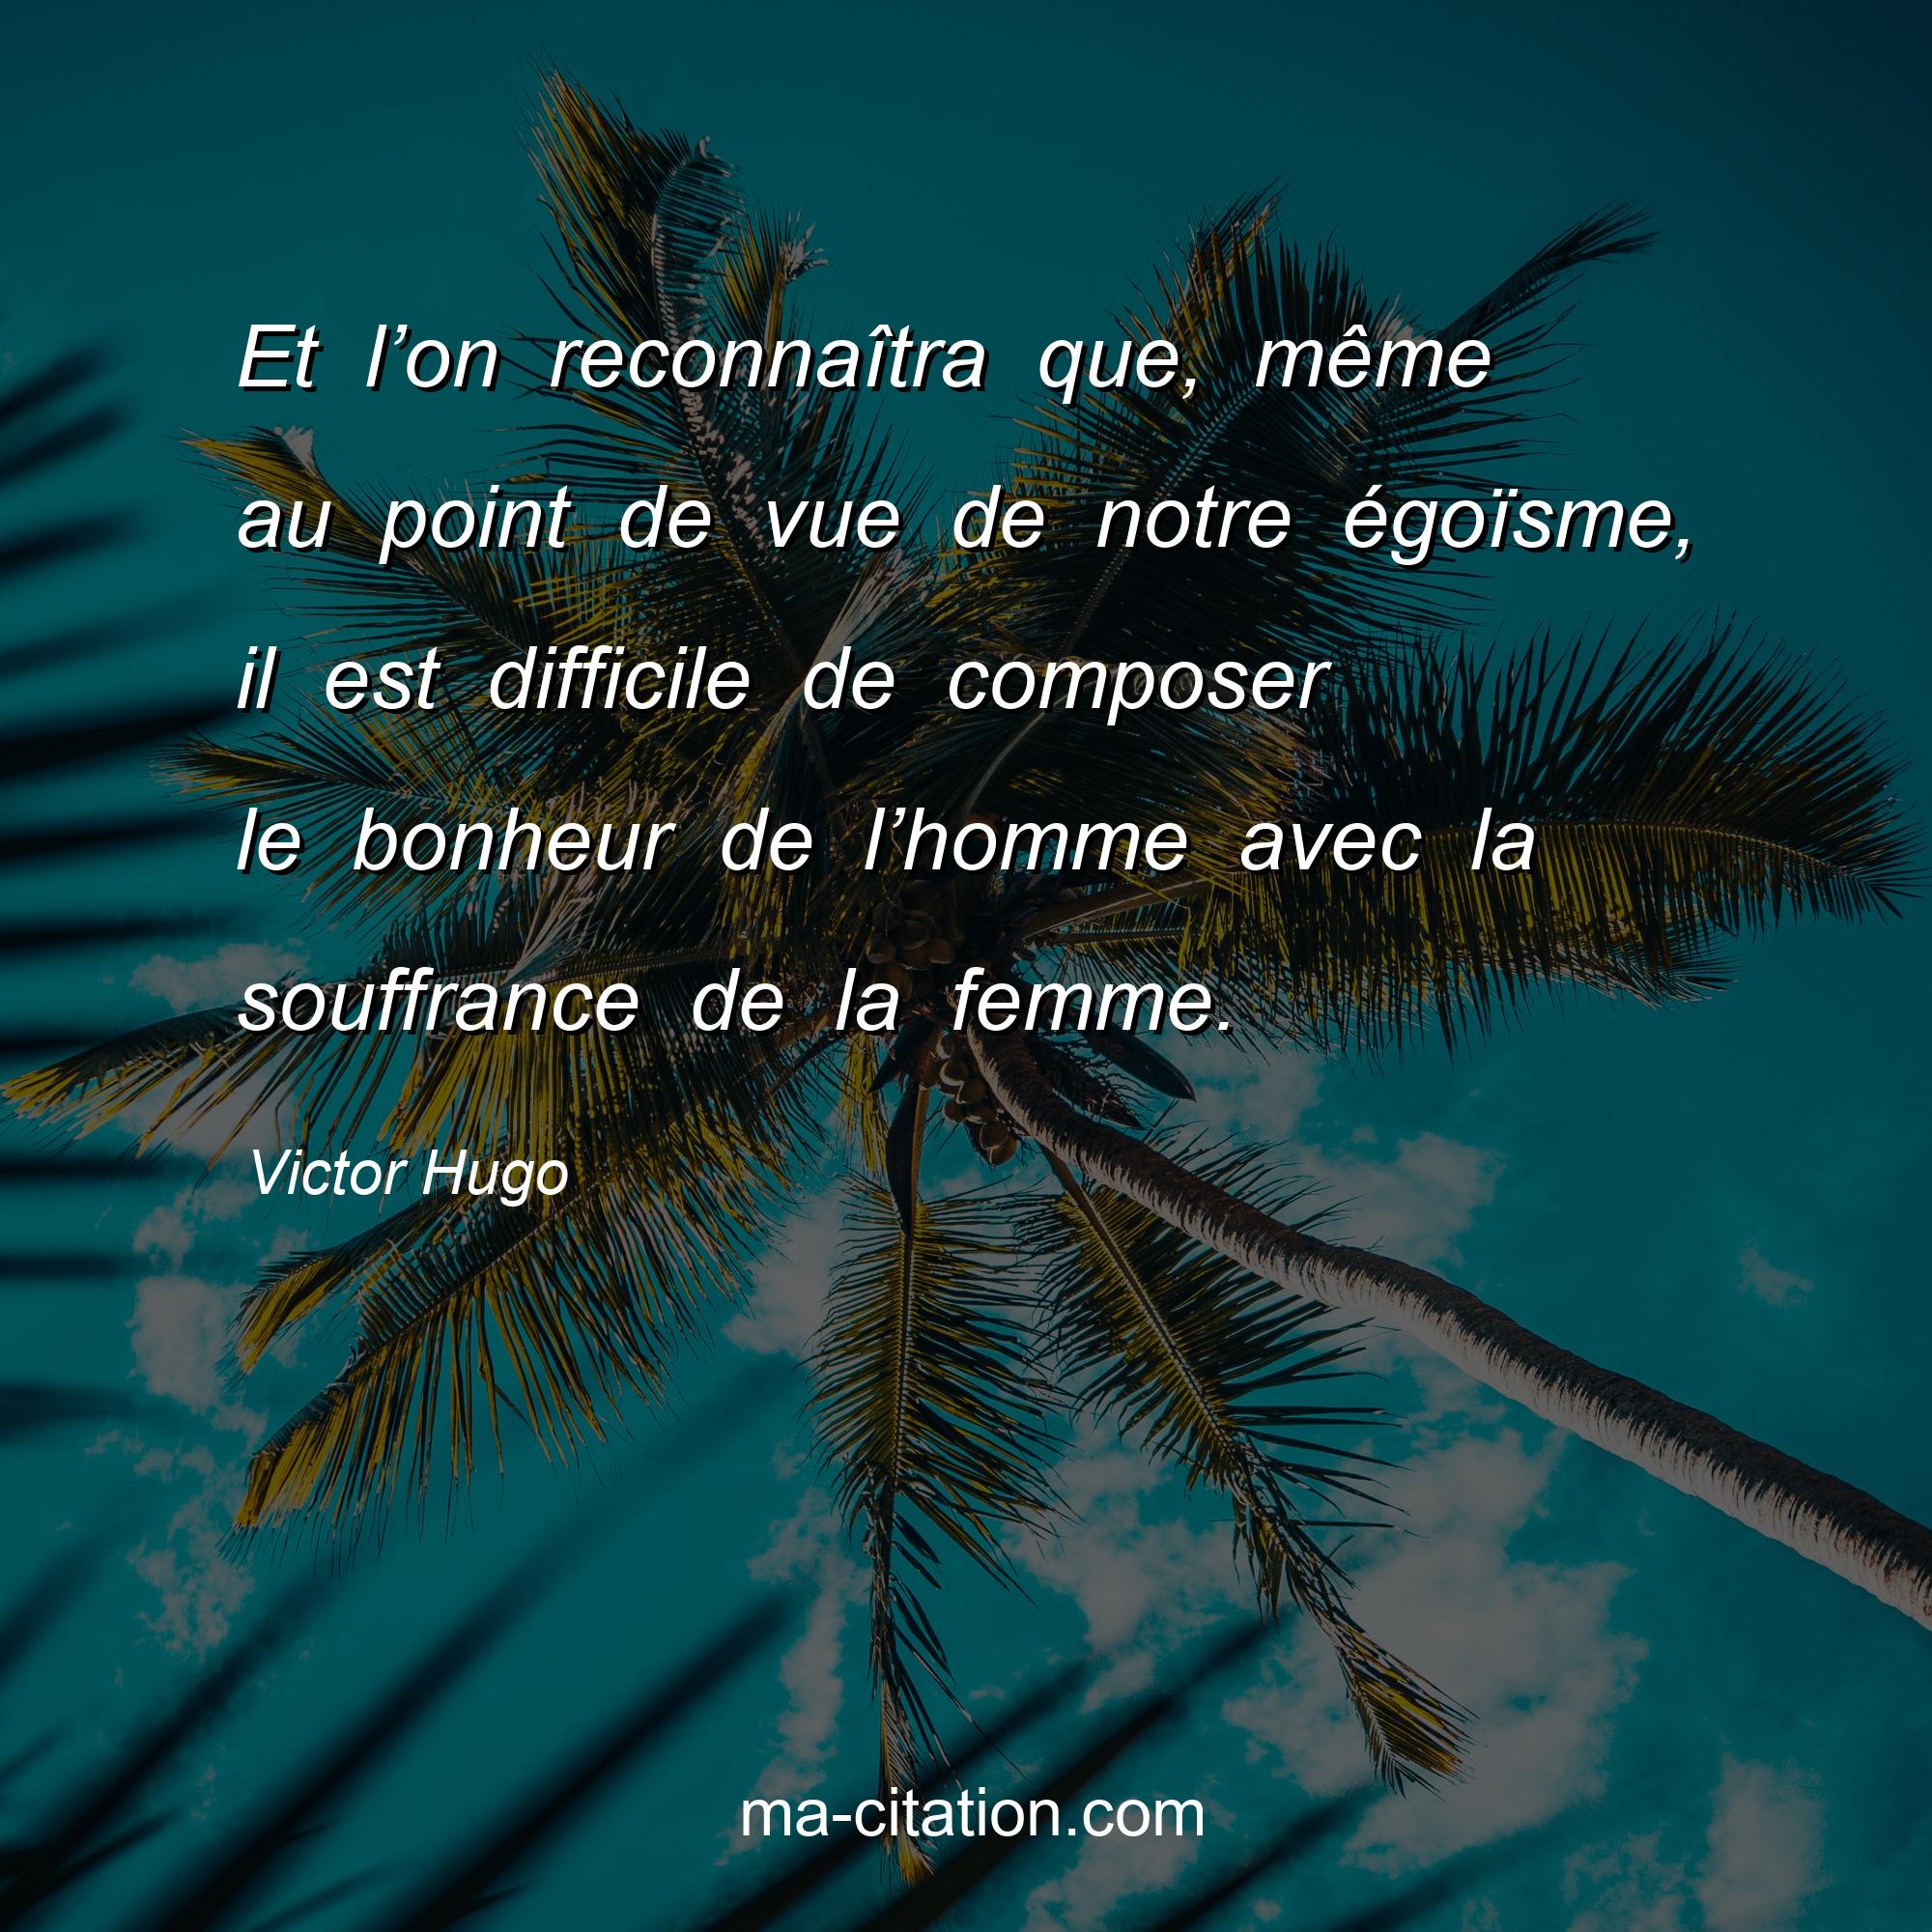 Victor Hugo : Et l’on reconnaîtra que, même au point de vue de notre égoïsme, il est difficile de composer le bonheur de l’homme avec la souffrance de la femme.